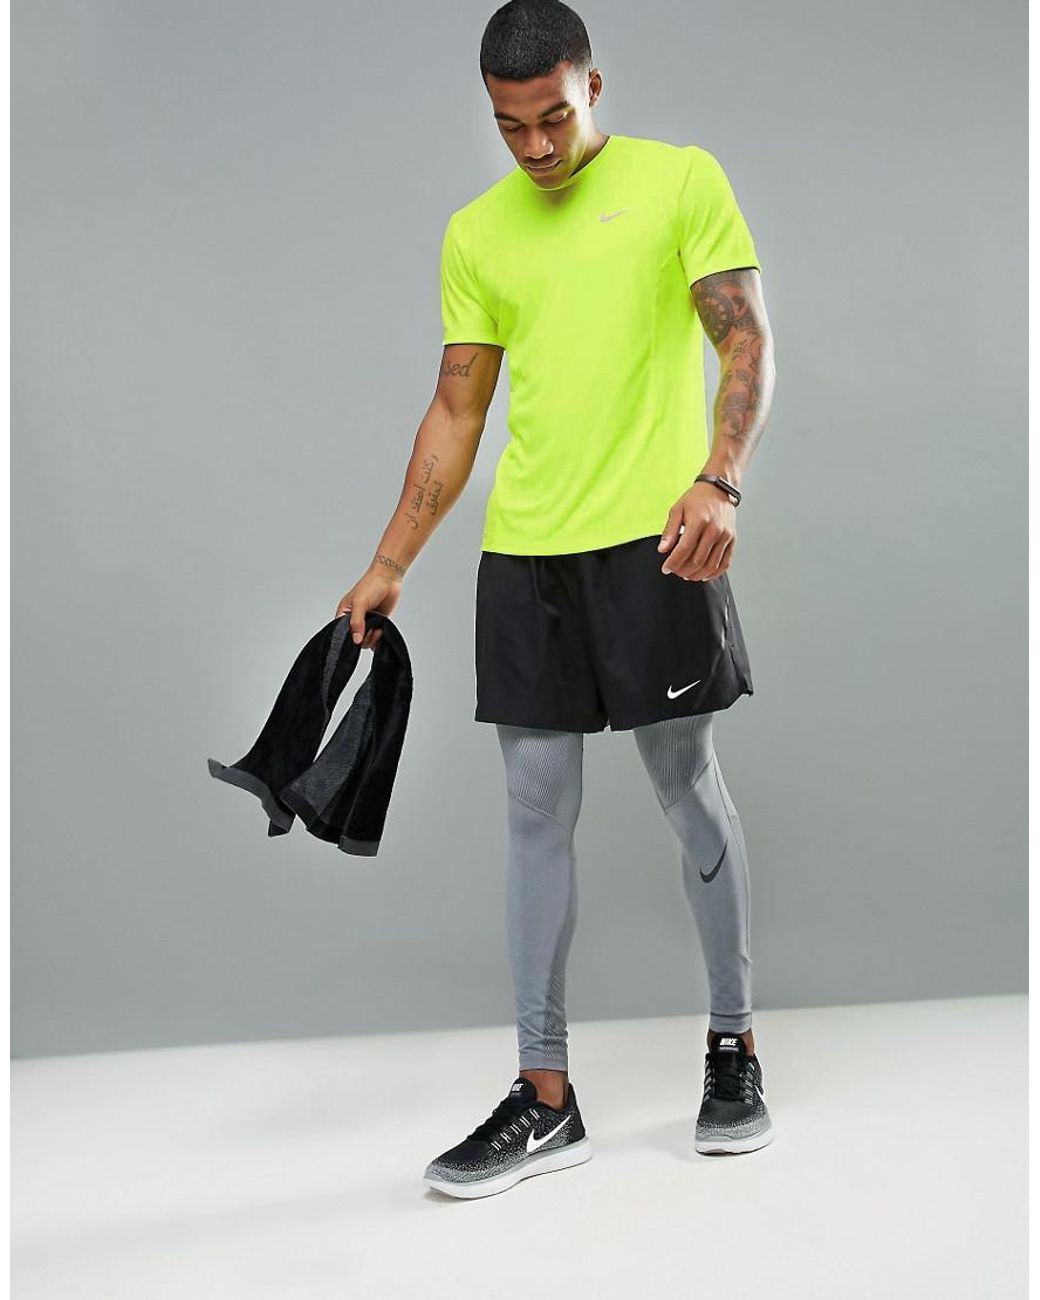 Nike Nike Dri-fit Miler T-shirt In Yellow 683527-702 for Men | Lyst UK